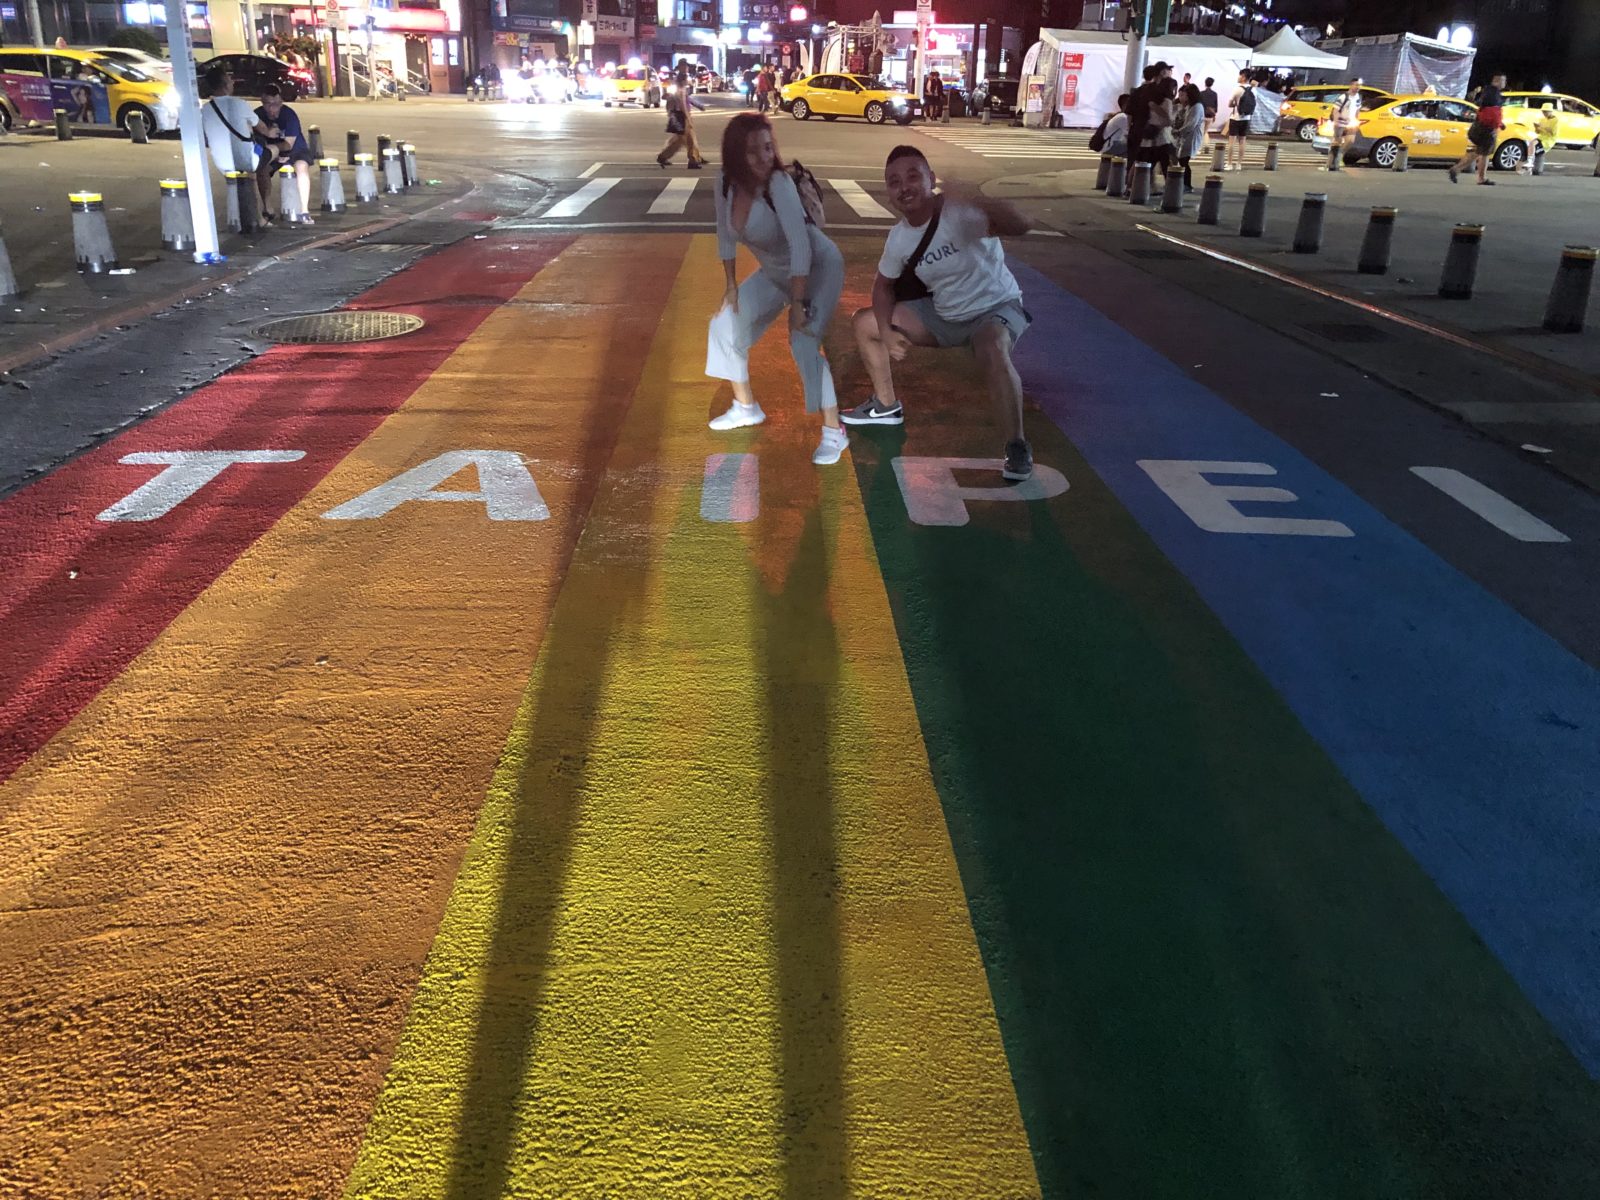 写真は昨年の台北レインボープライド時に西門で撮った物です。同性婚が認められた年だった為かいつもより賑やかでした。